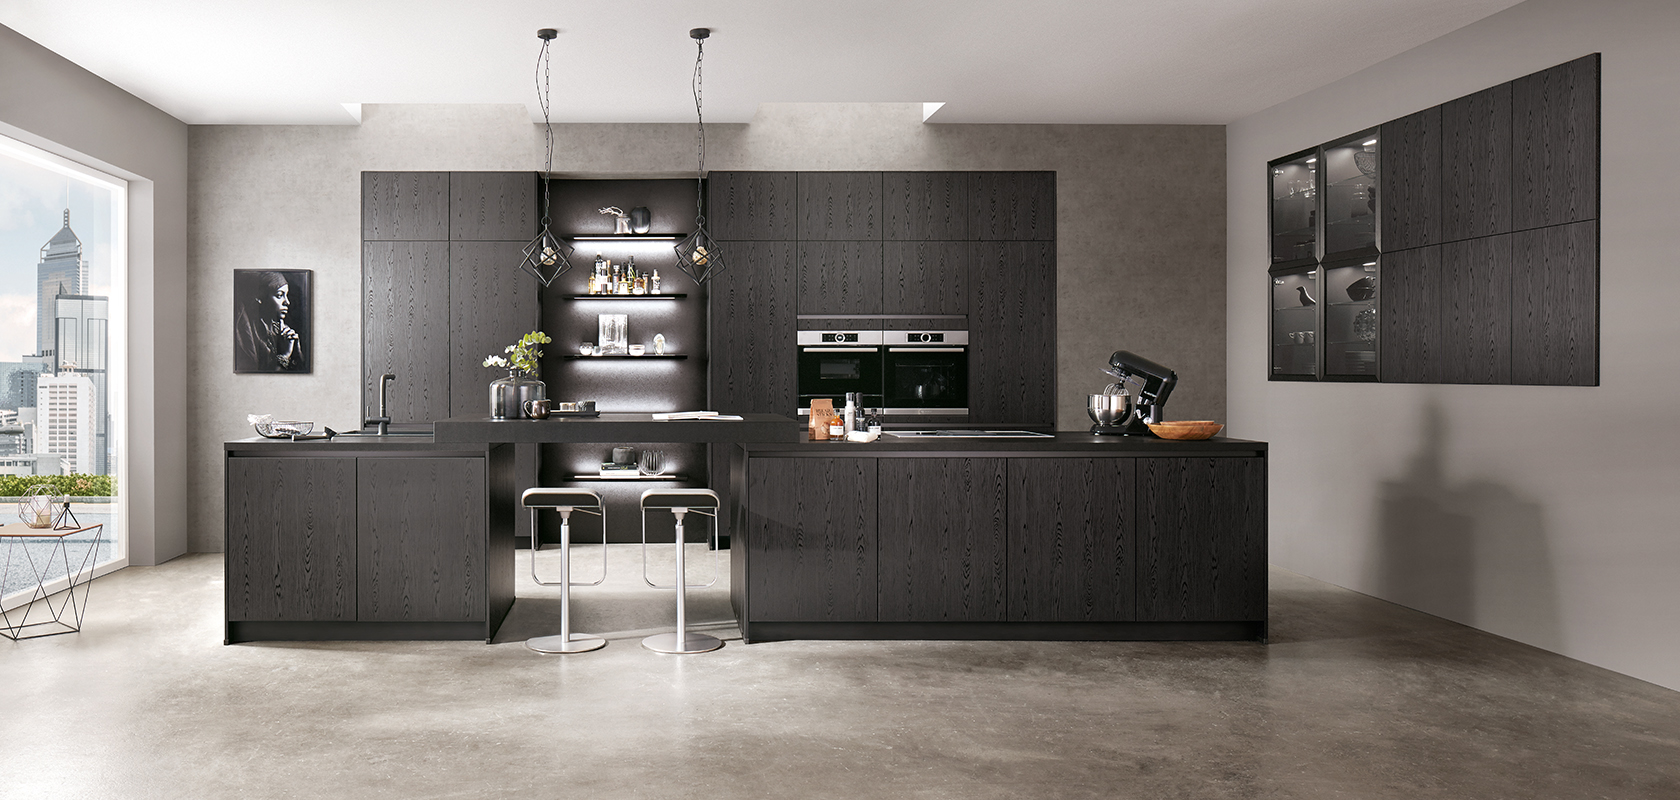 Conception de cuisine moderne avec des armoires noires élégantes, des appareils en acier inoxydable et un îlot central avec des tabourets de bar sur un fond de textures en béton gris.